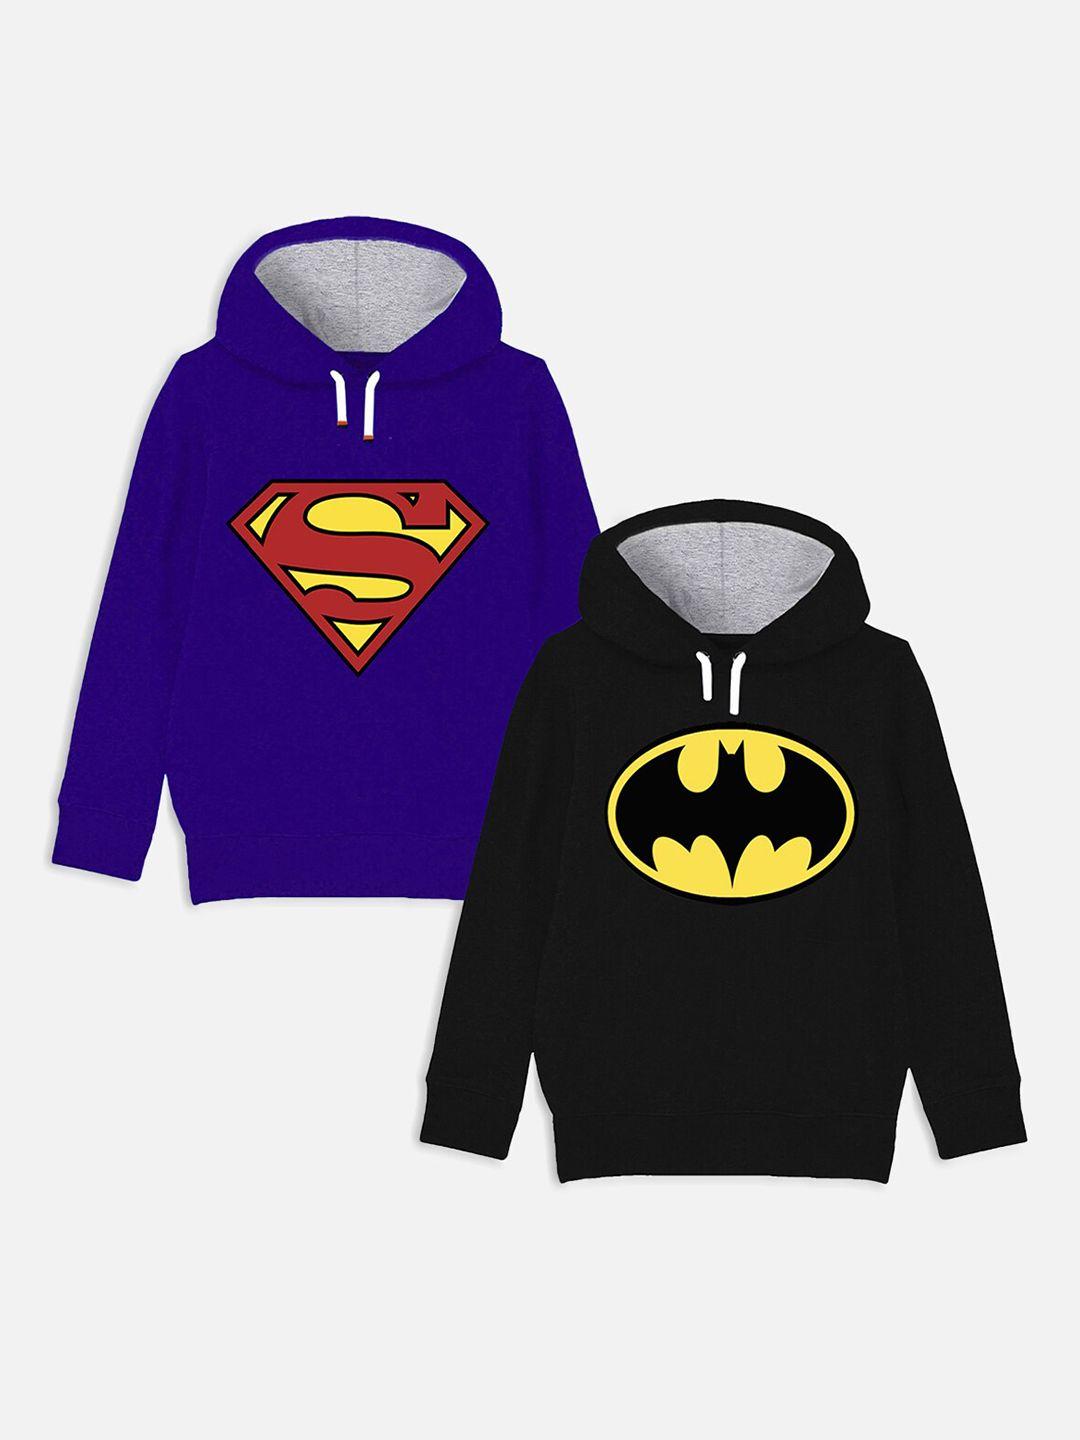 yk justice league boys pack of 2 superhero logo printed hooded sweatshirt